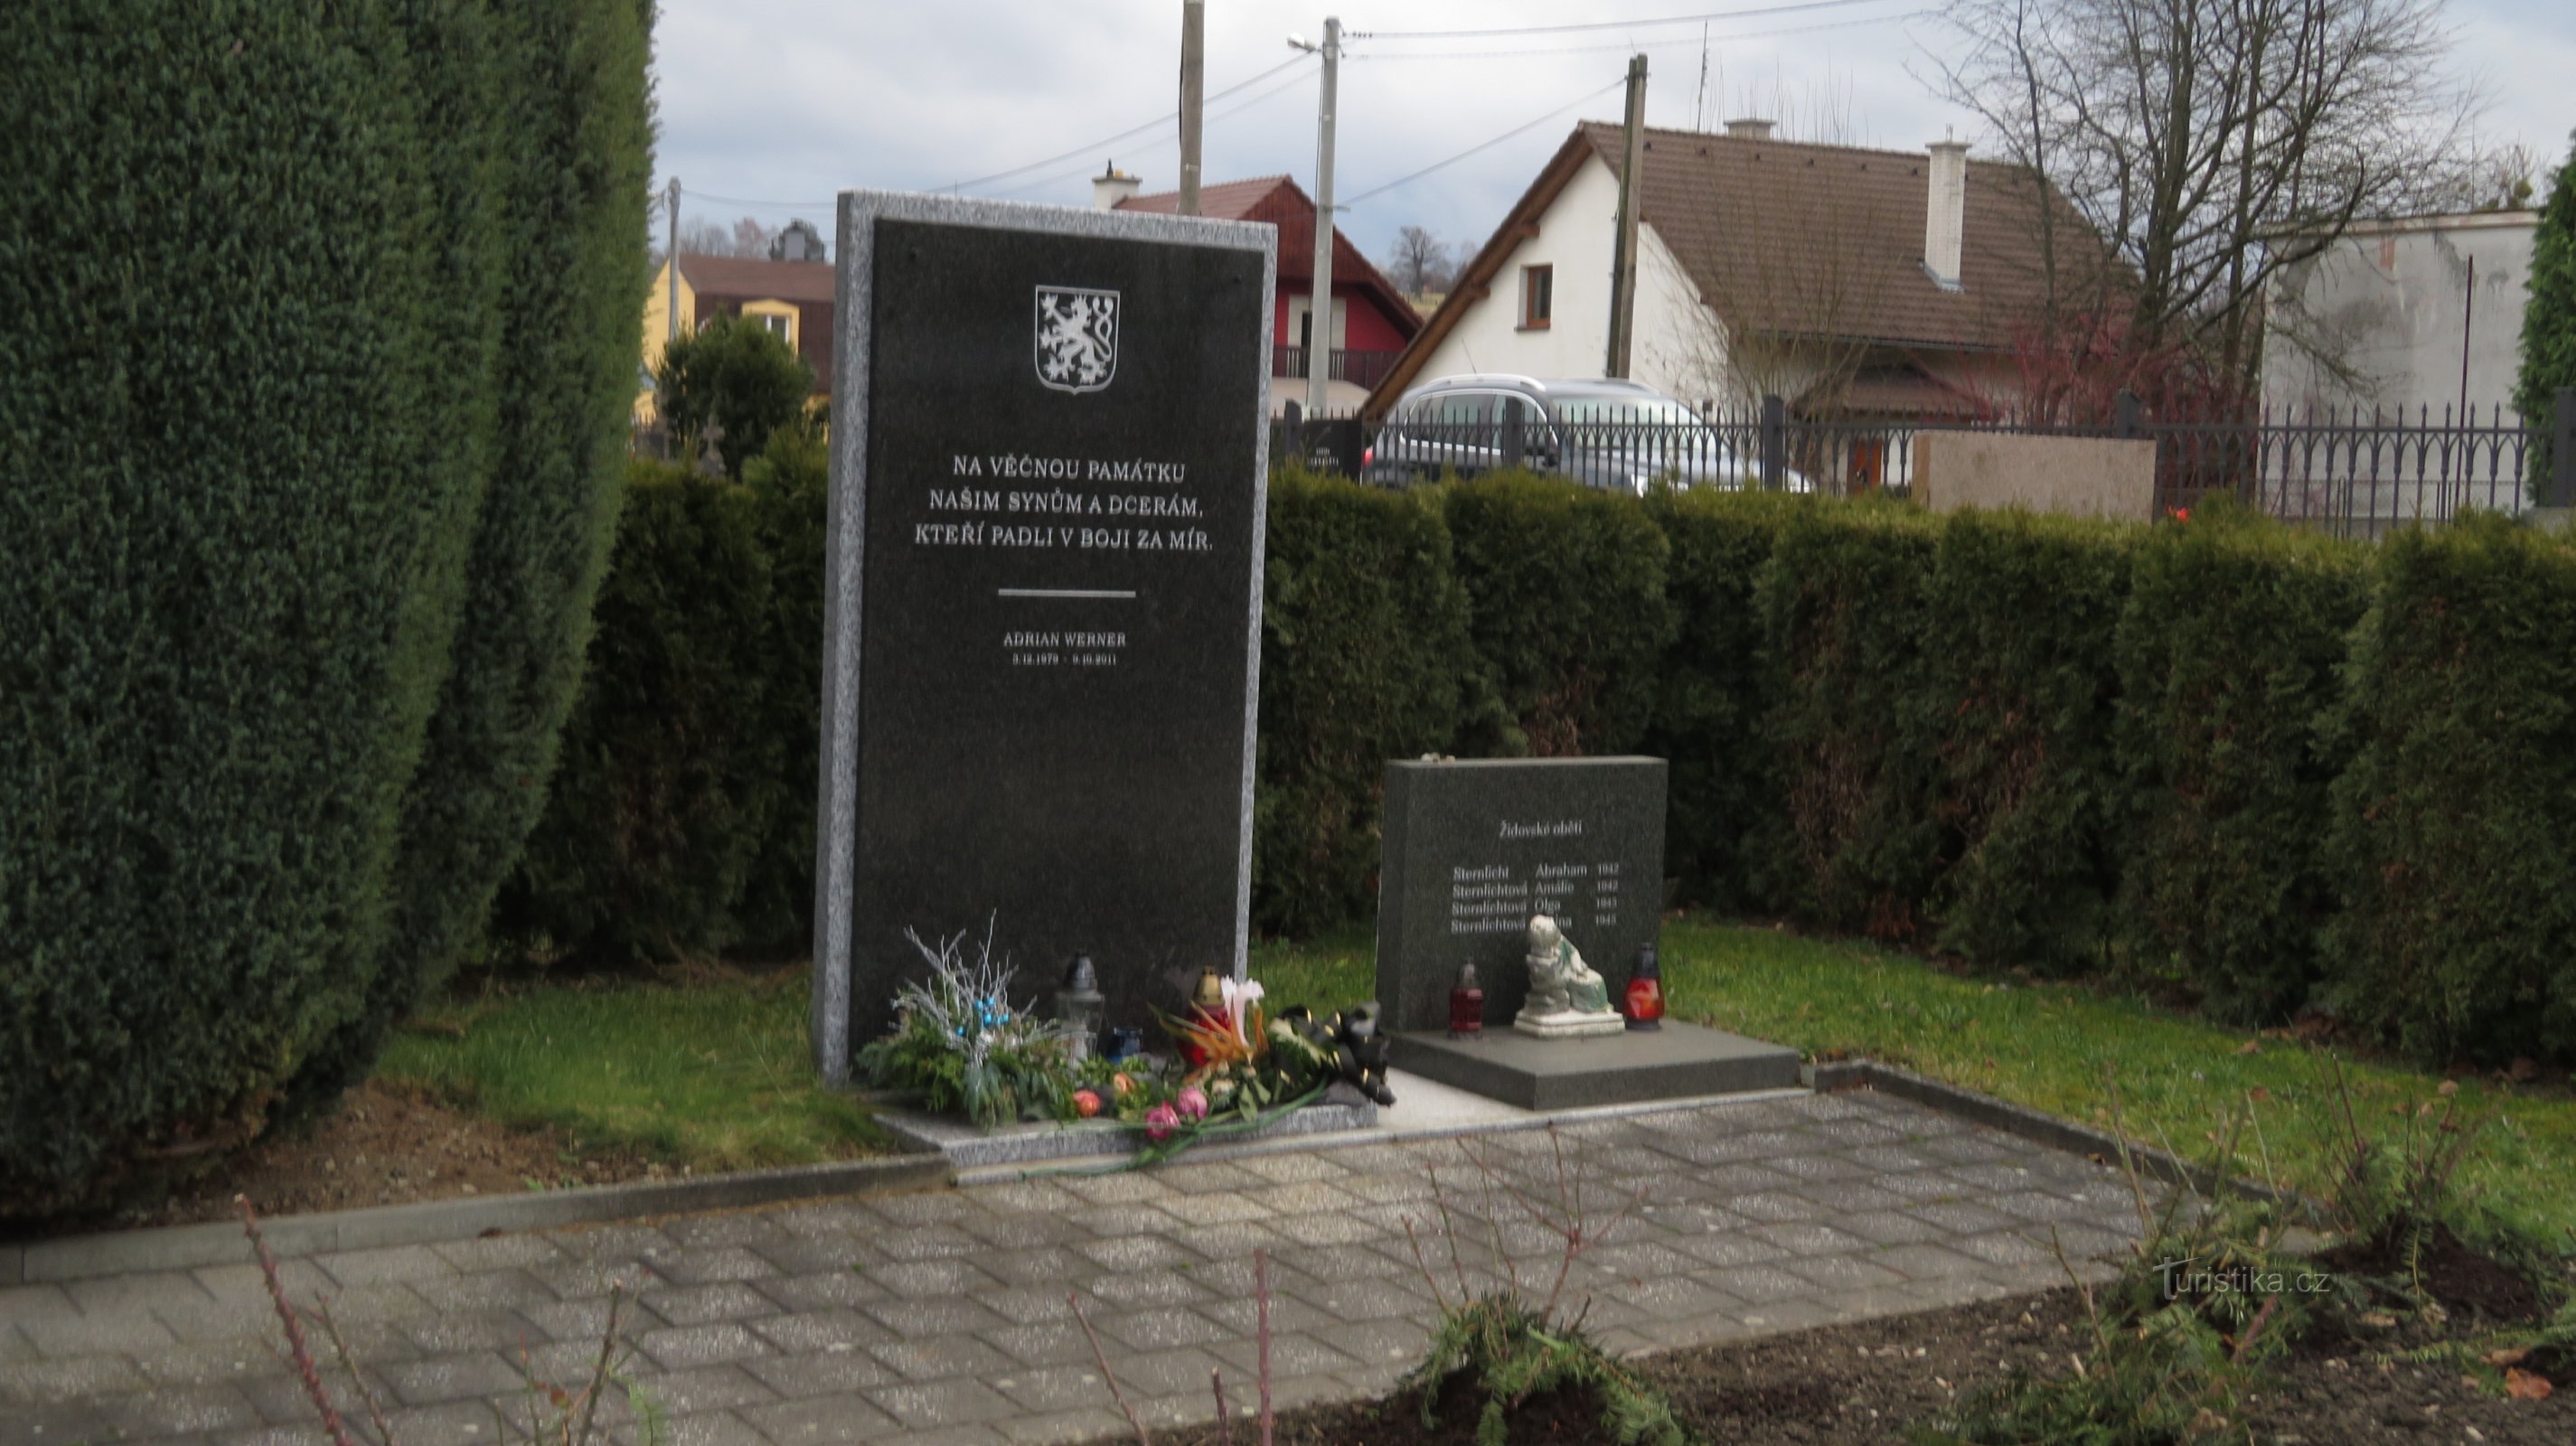 Albrechtice vicino a Český Těšín - ogni epoca ha i suoi eroi